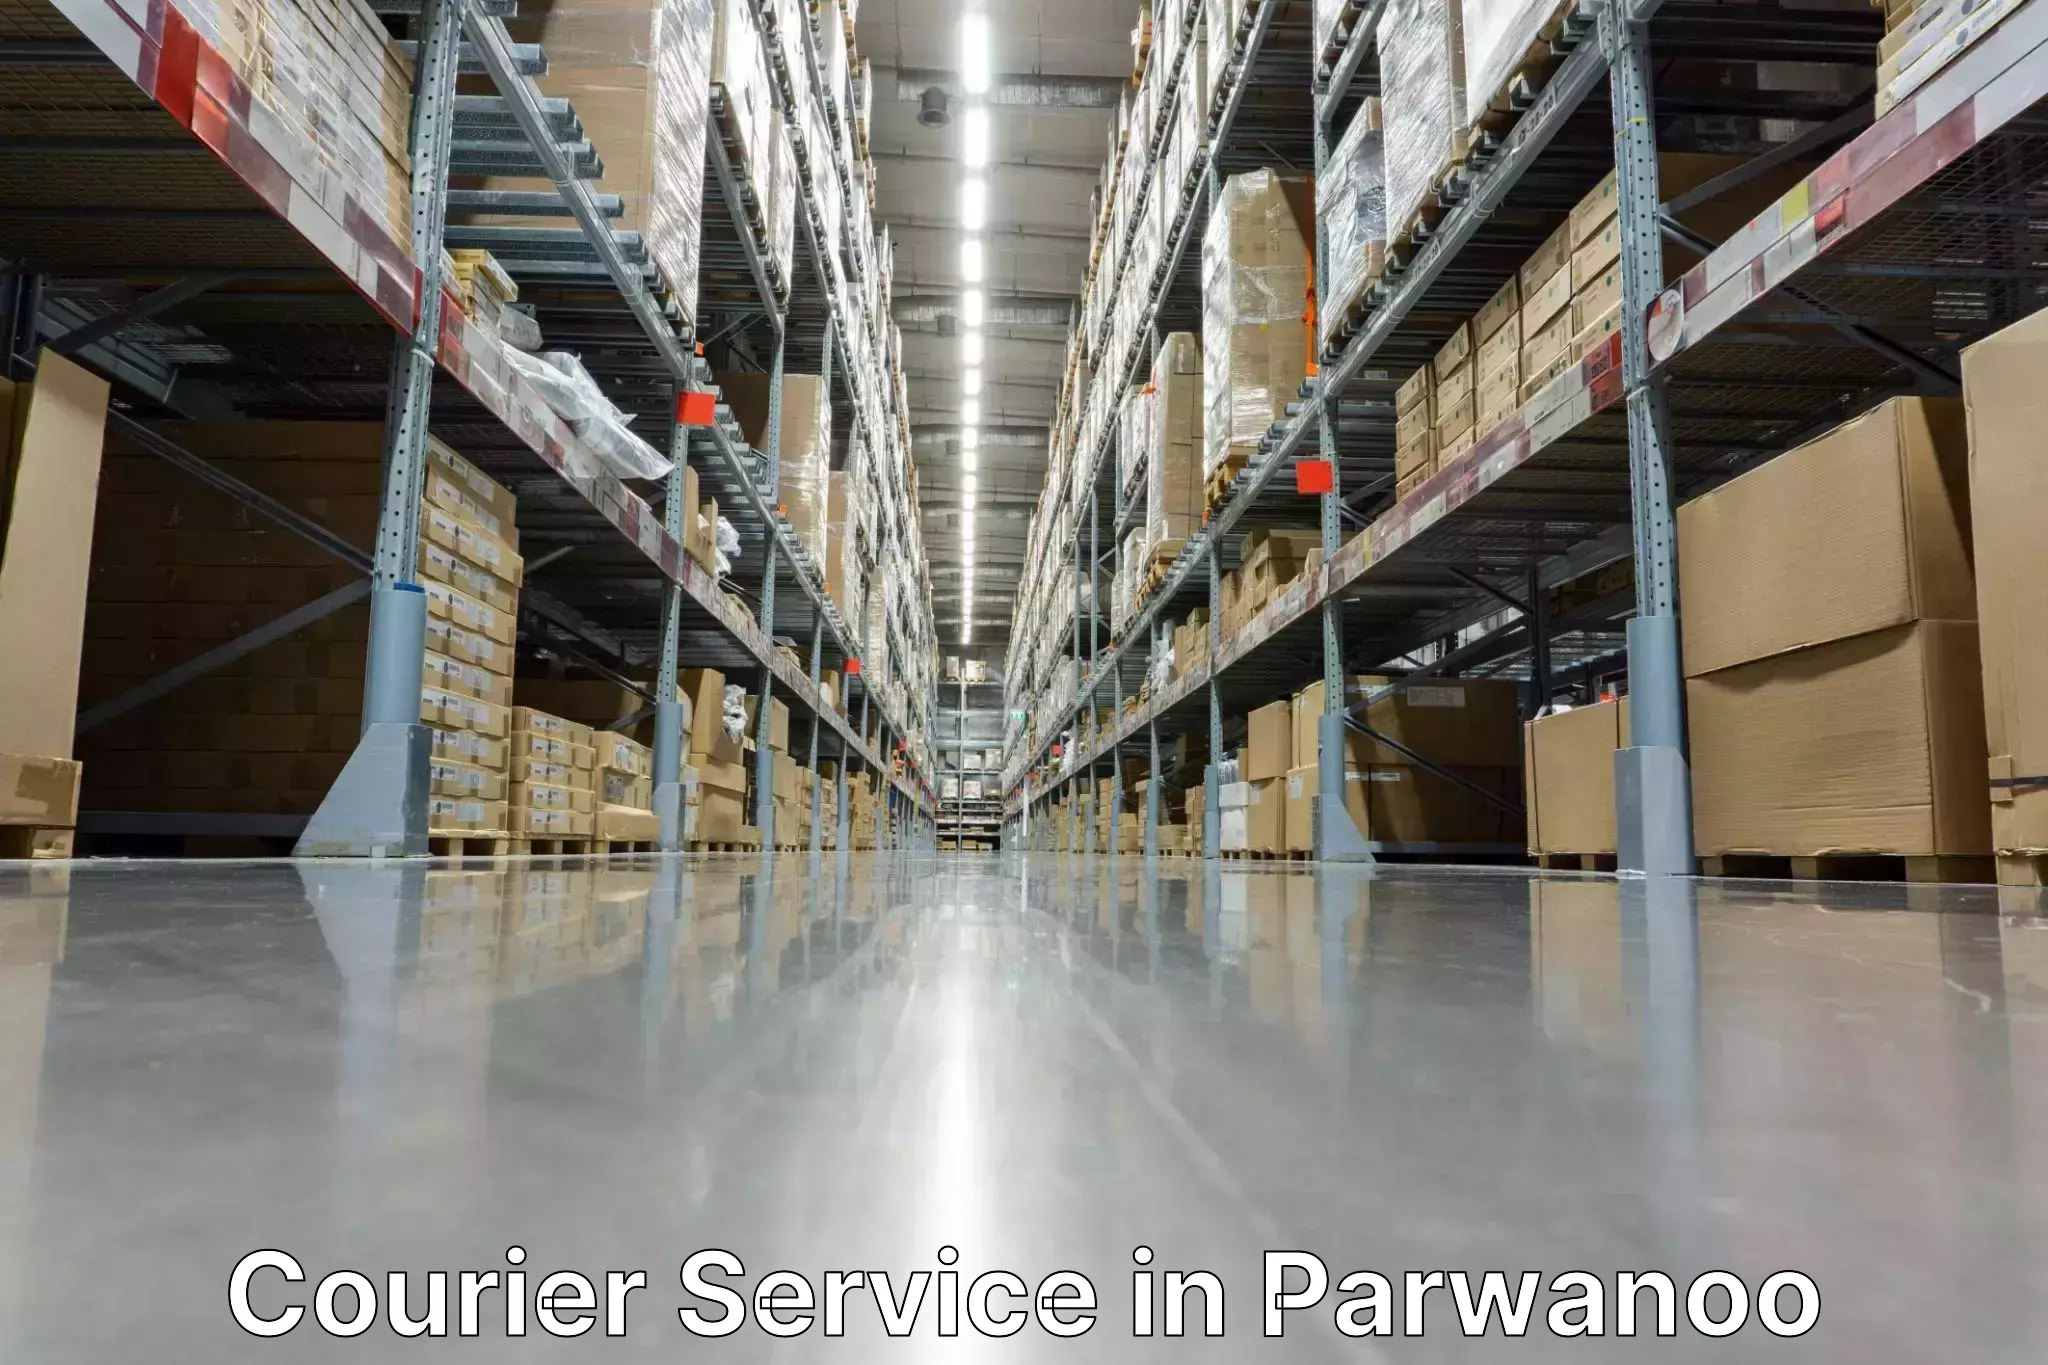 Logistics management in Parwanoo